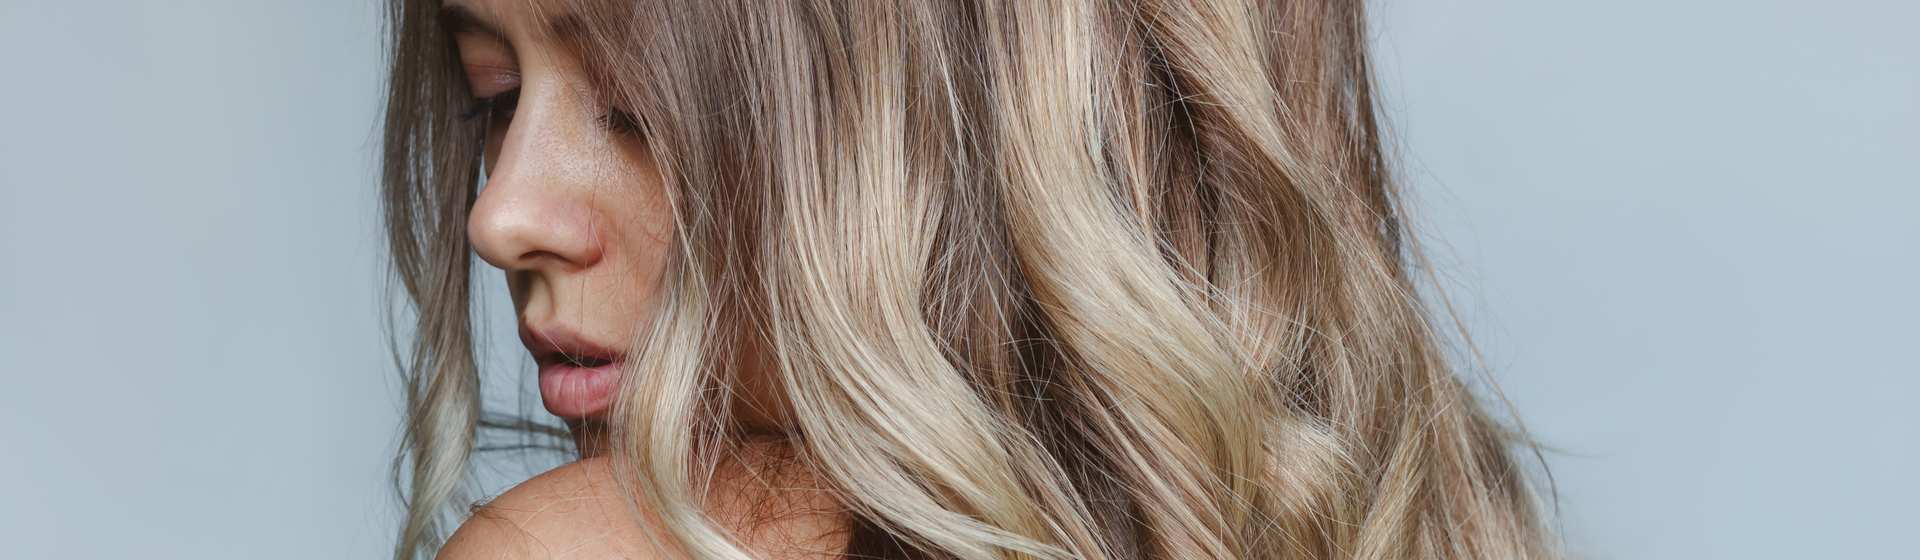 4 dicas para cuidar do cabelo loiro em casa